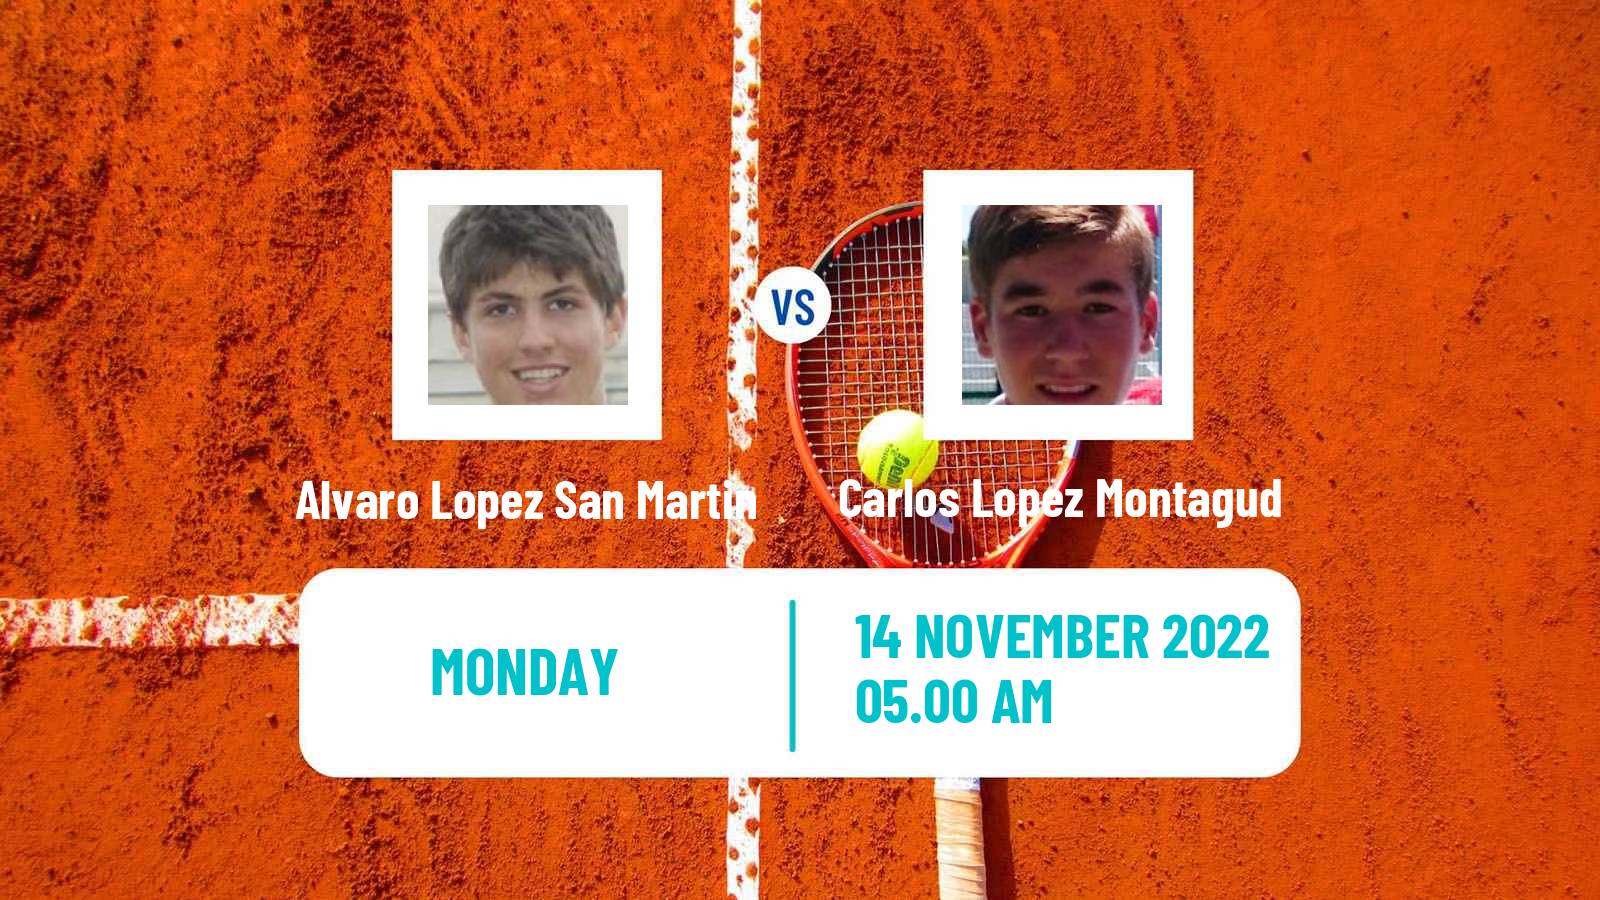 Tennis ITF Tournaments Alvaro Lopez San Martin - Carlos Lopez Montagud